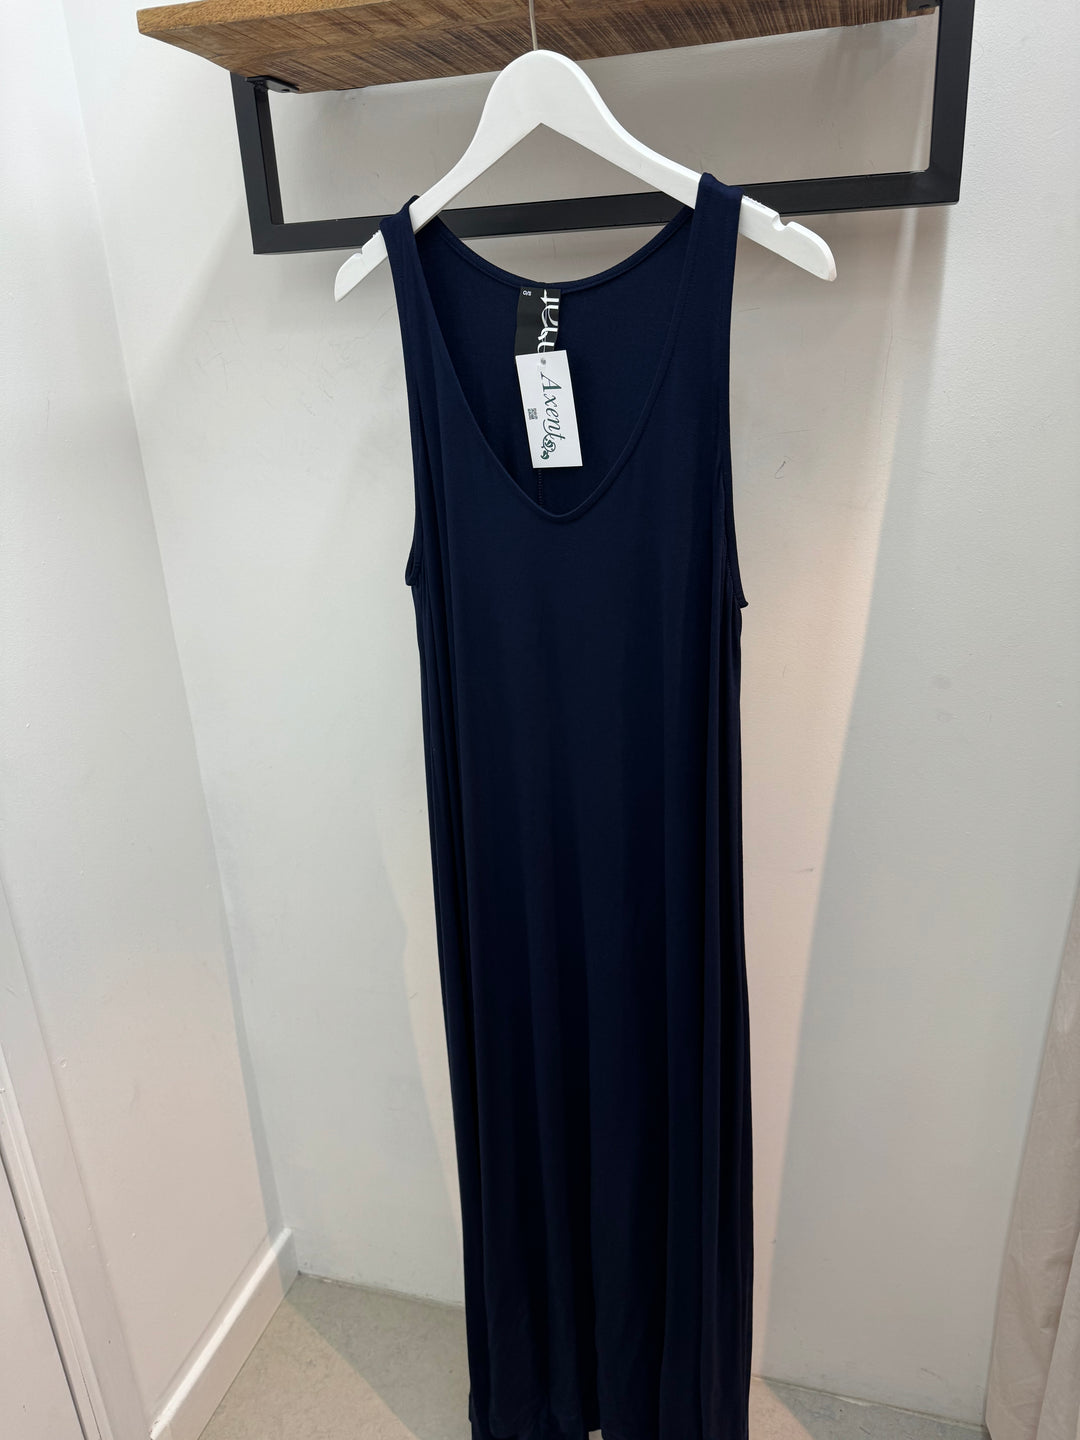 blauwe zomerse jurk-mat fashion-0000.7502.C - blue